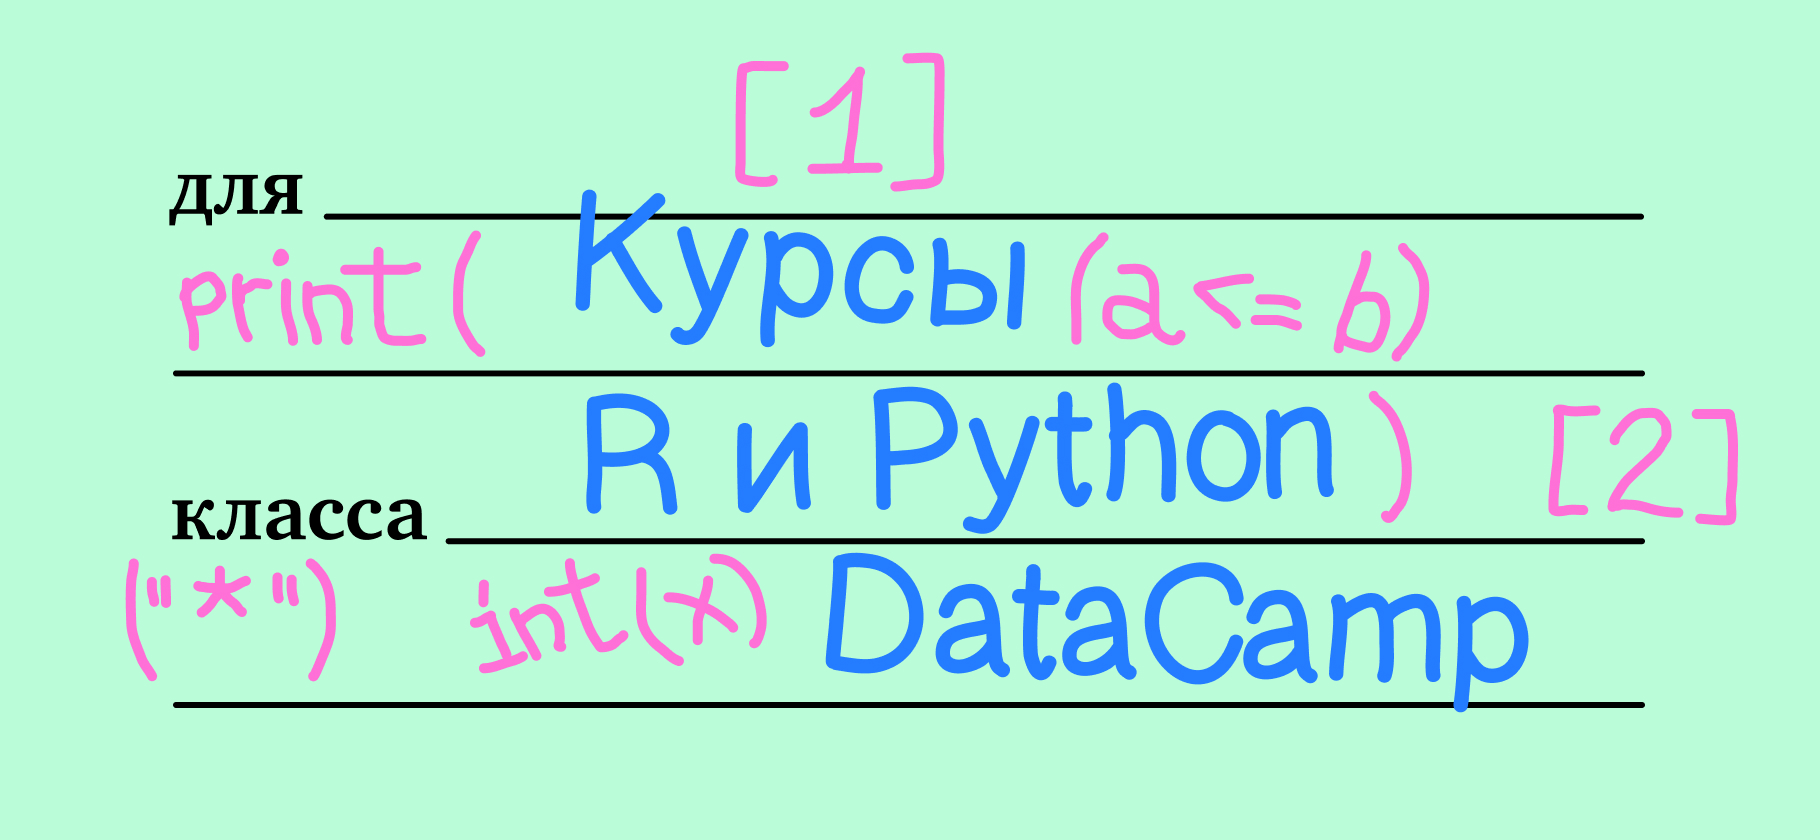 Я прошла курсы по R и Python на DataCamp и разобралась в основах программирования